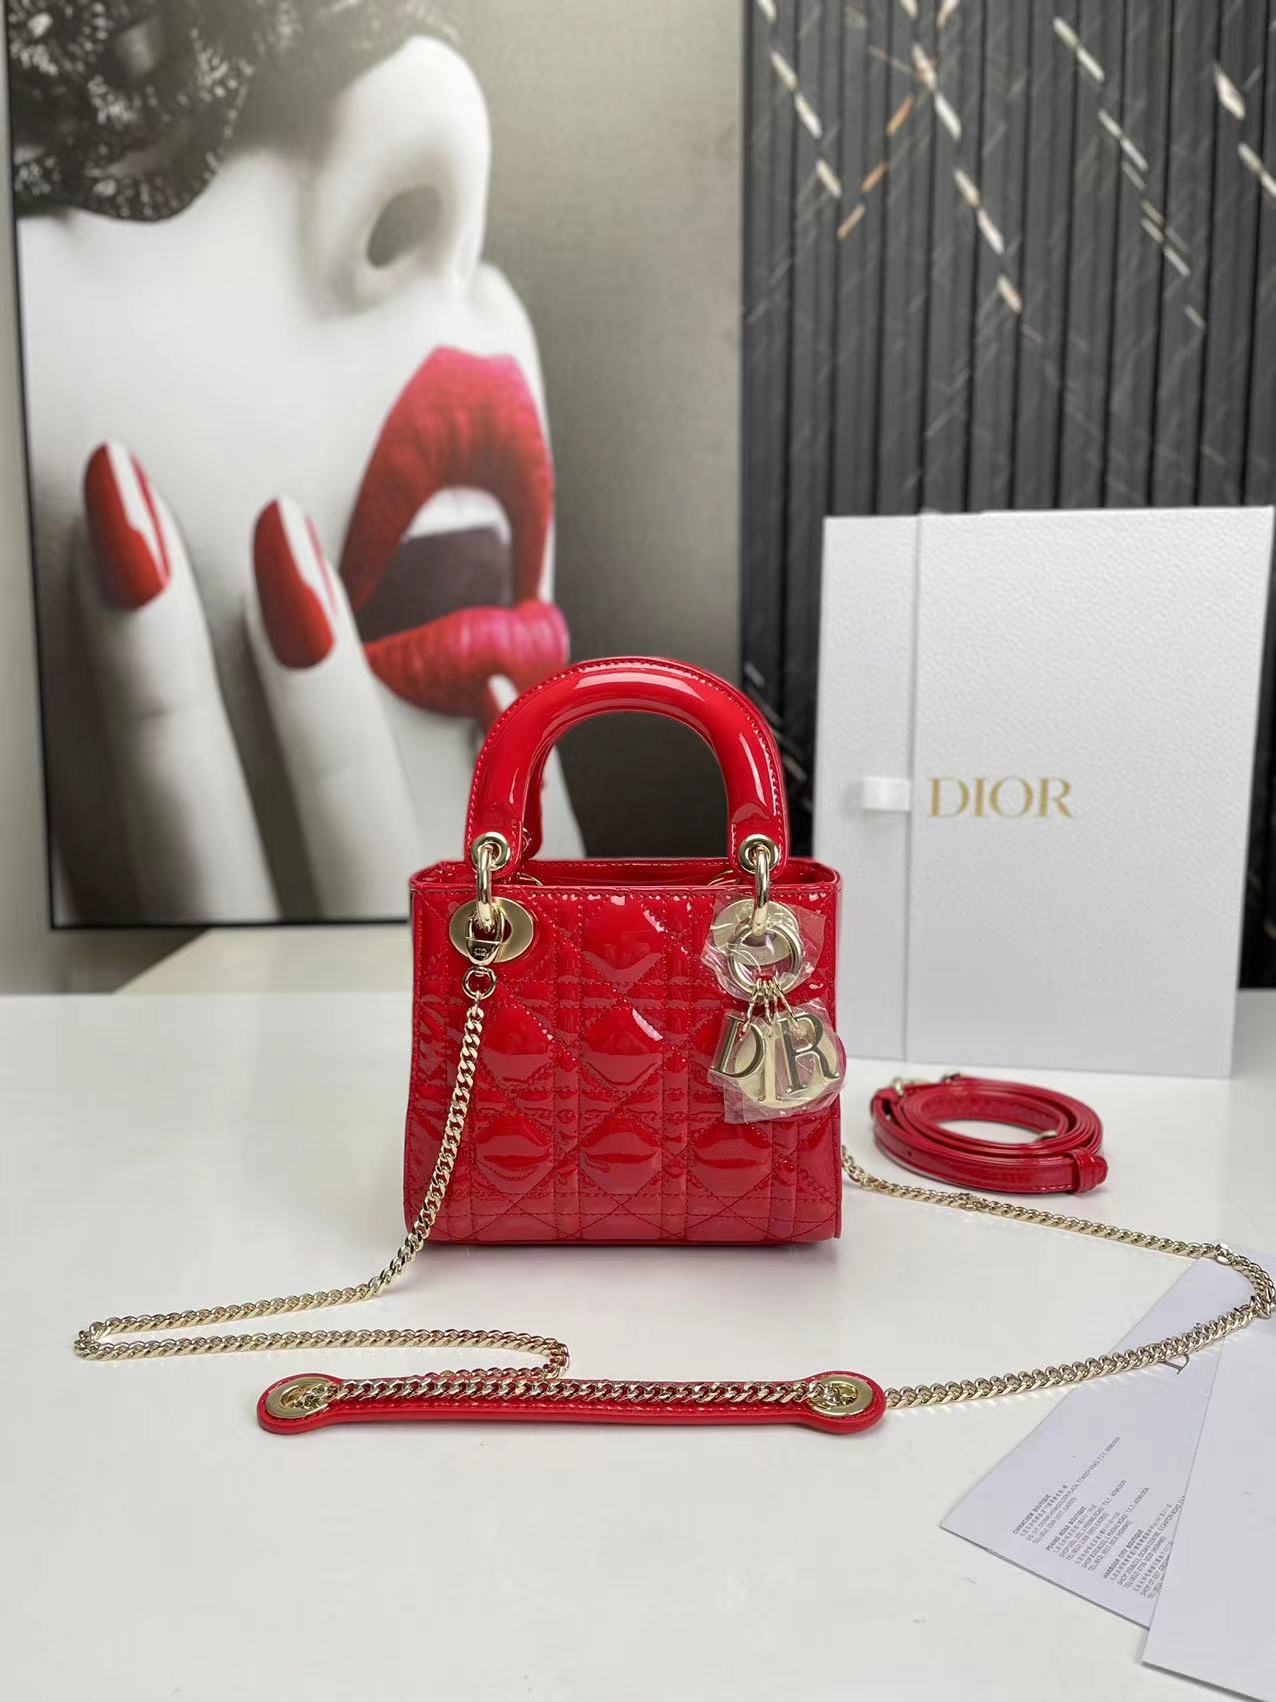 Lady Dior bag